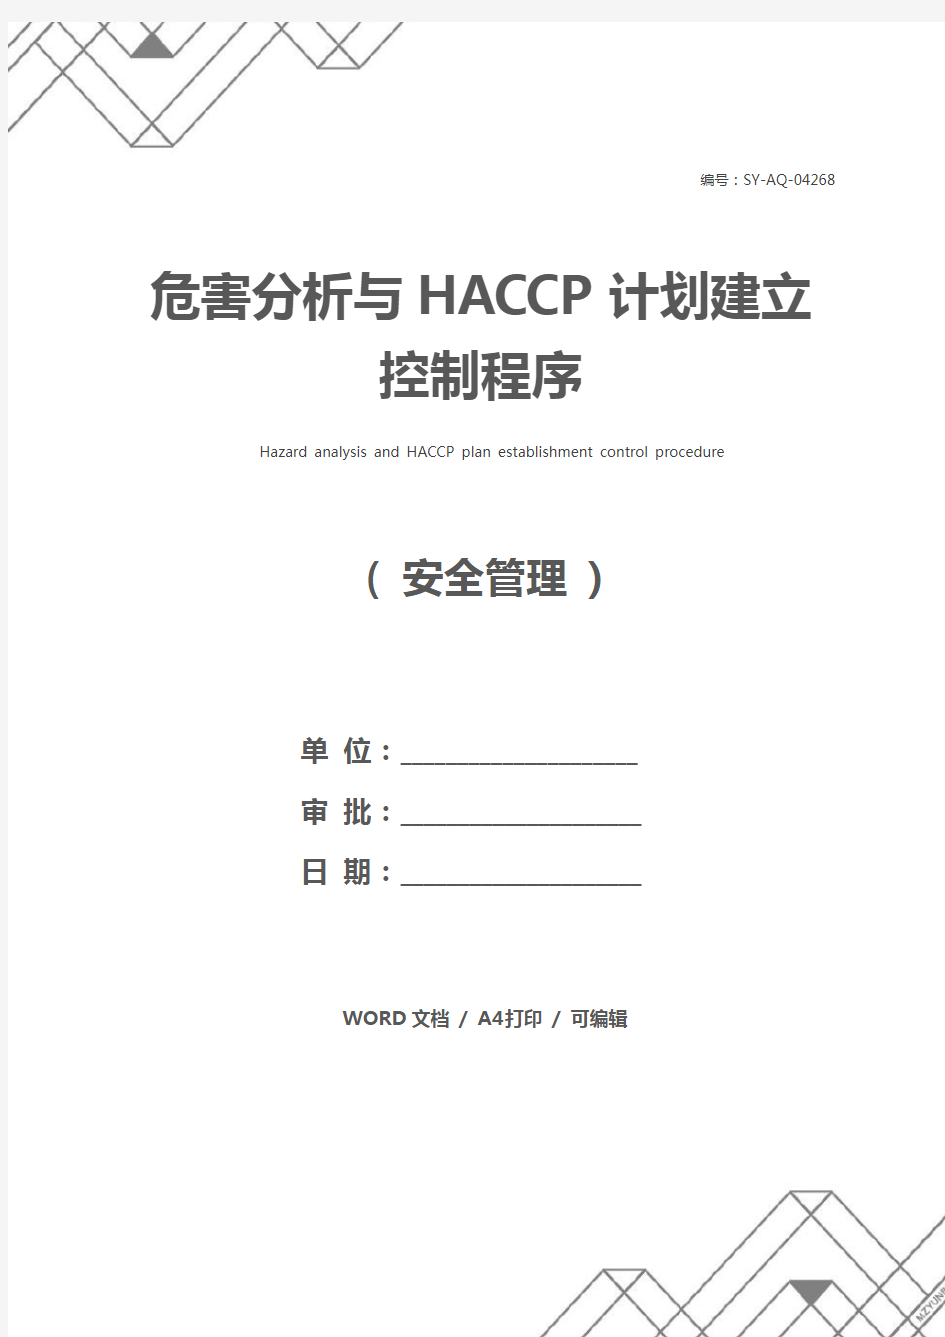 危害分析与HACCP计划建立控制程序